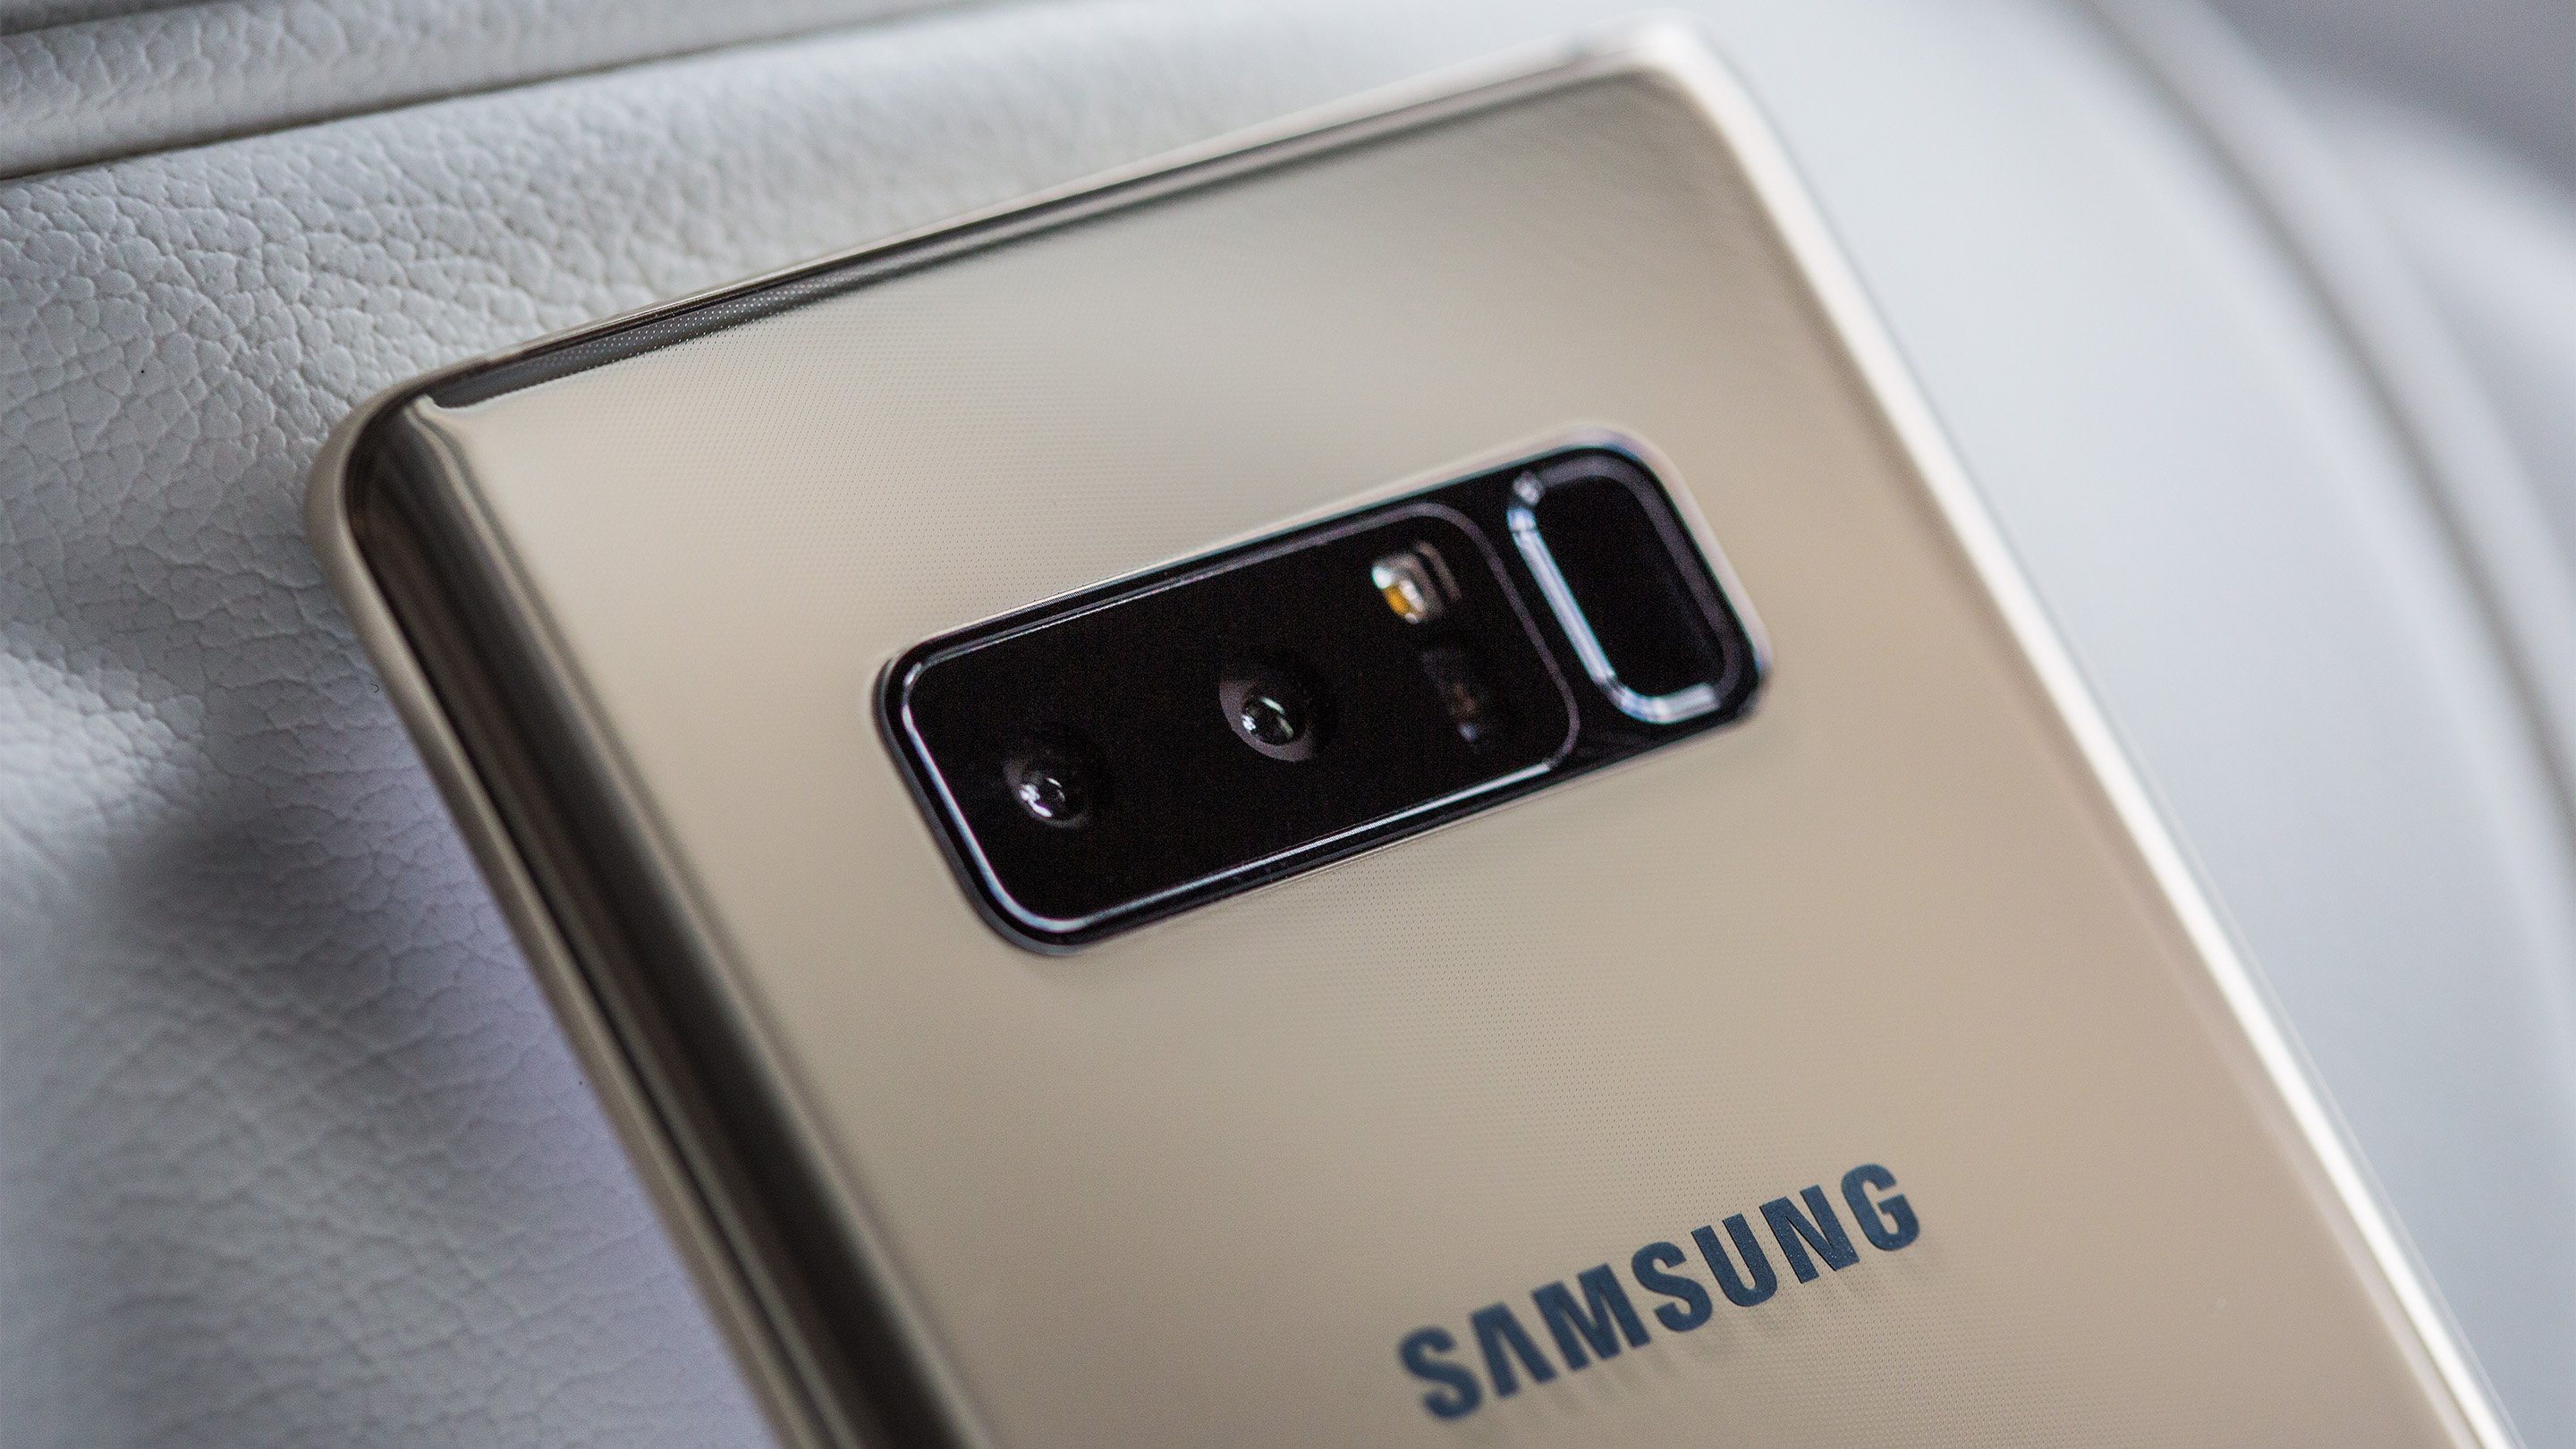 Samsung Galaxy Note 8 empfängt keine SMS mehr - das kann helfen